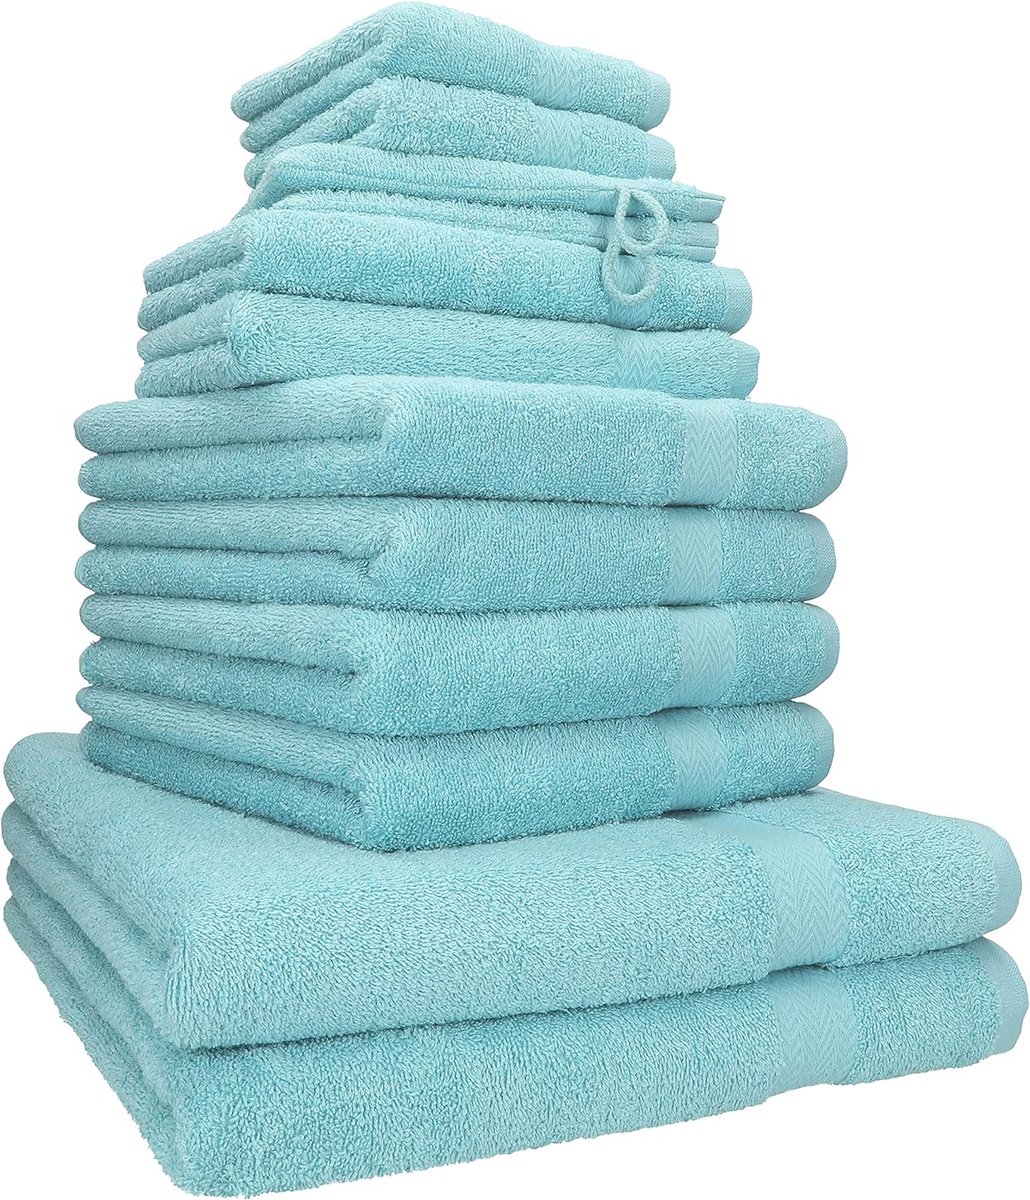 PREMIUM 12-delige badstof handdoekenset 2x lighanddoeken 4x handdoeken 2x gastendoekjes 2x zeepdoekjes 2x washandjes oceaan